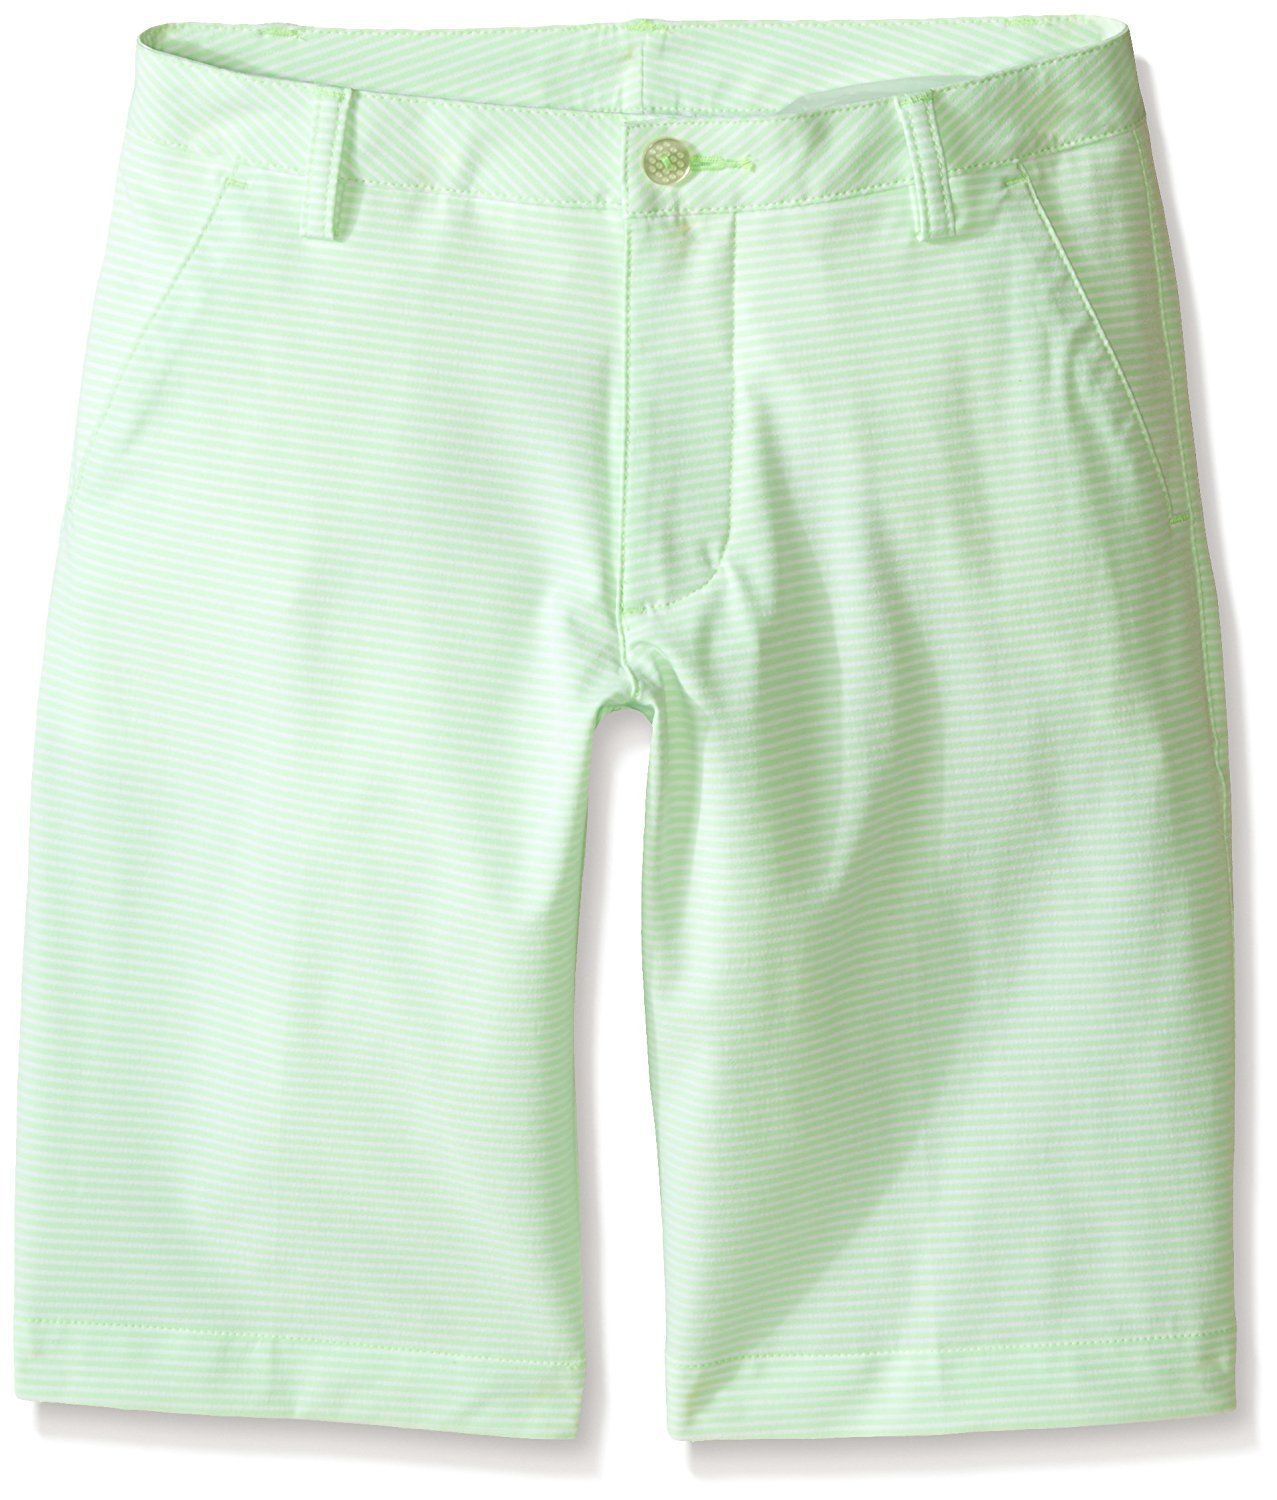 PUMA Golf Boys Stripe It Shorts (Big Kids) Green Gecko NWT - $29.95